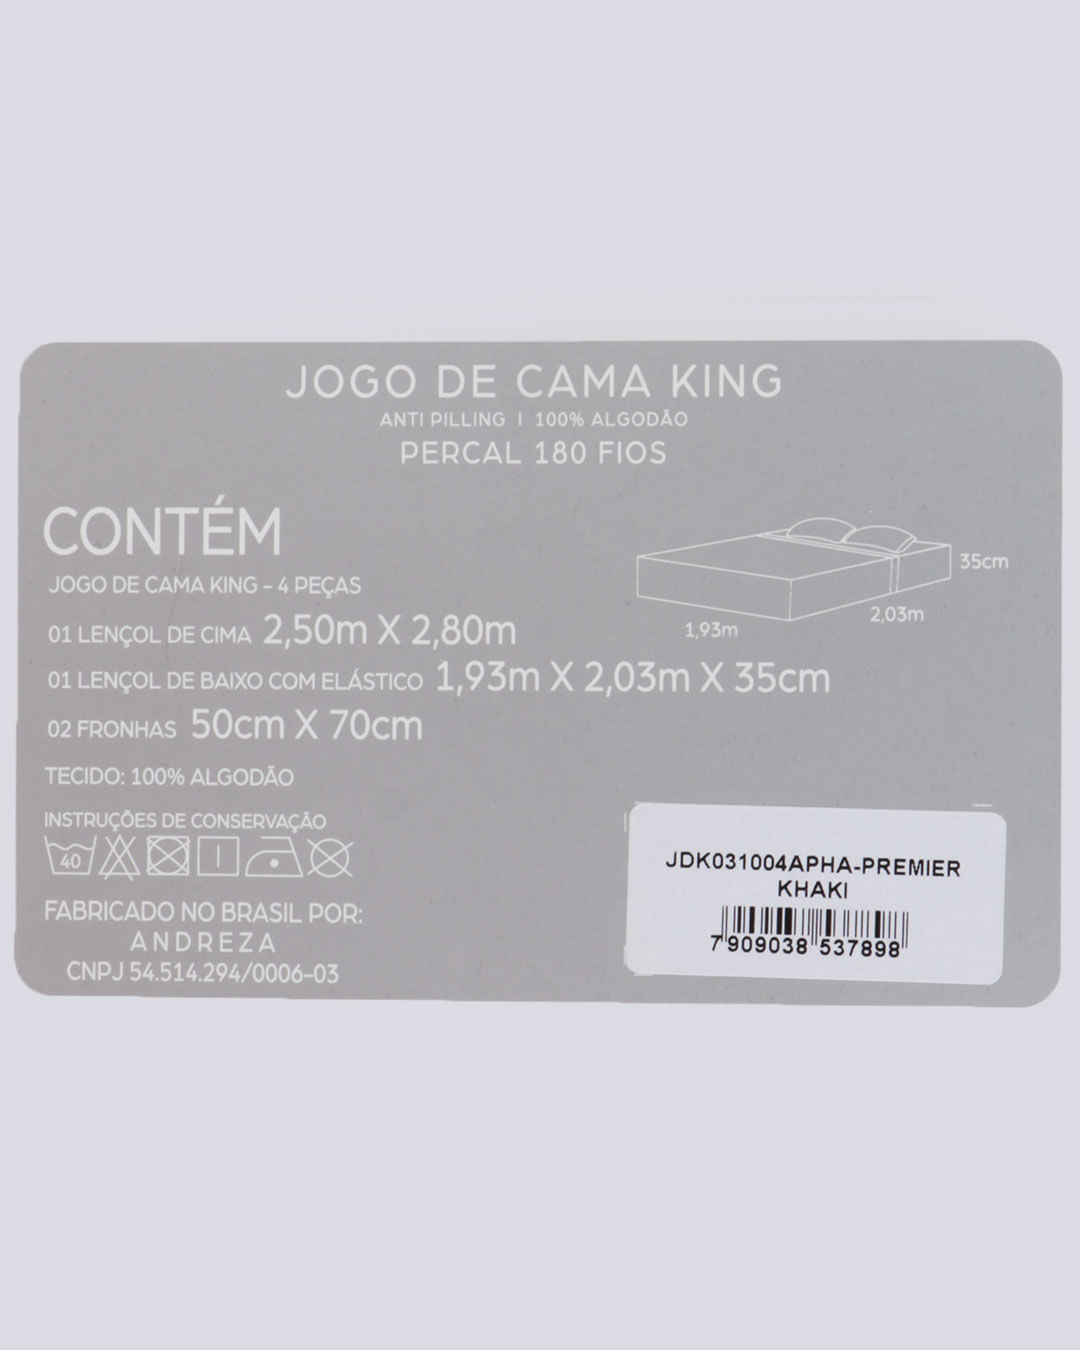 Jogo-de-Cama-King-Percal-180-Fios-Andreza-Liso-Bege-Khaki